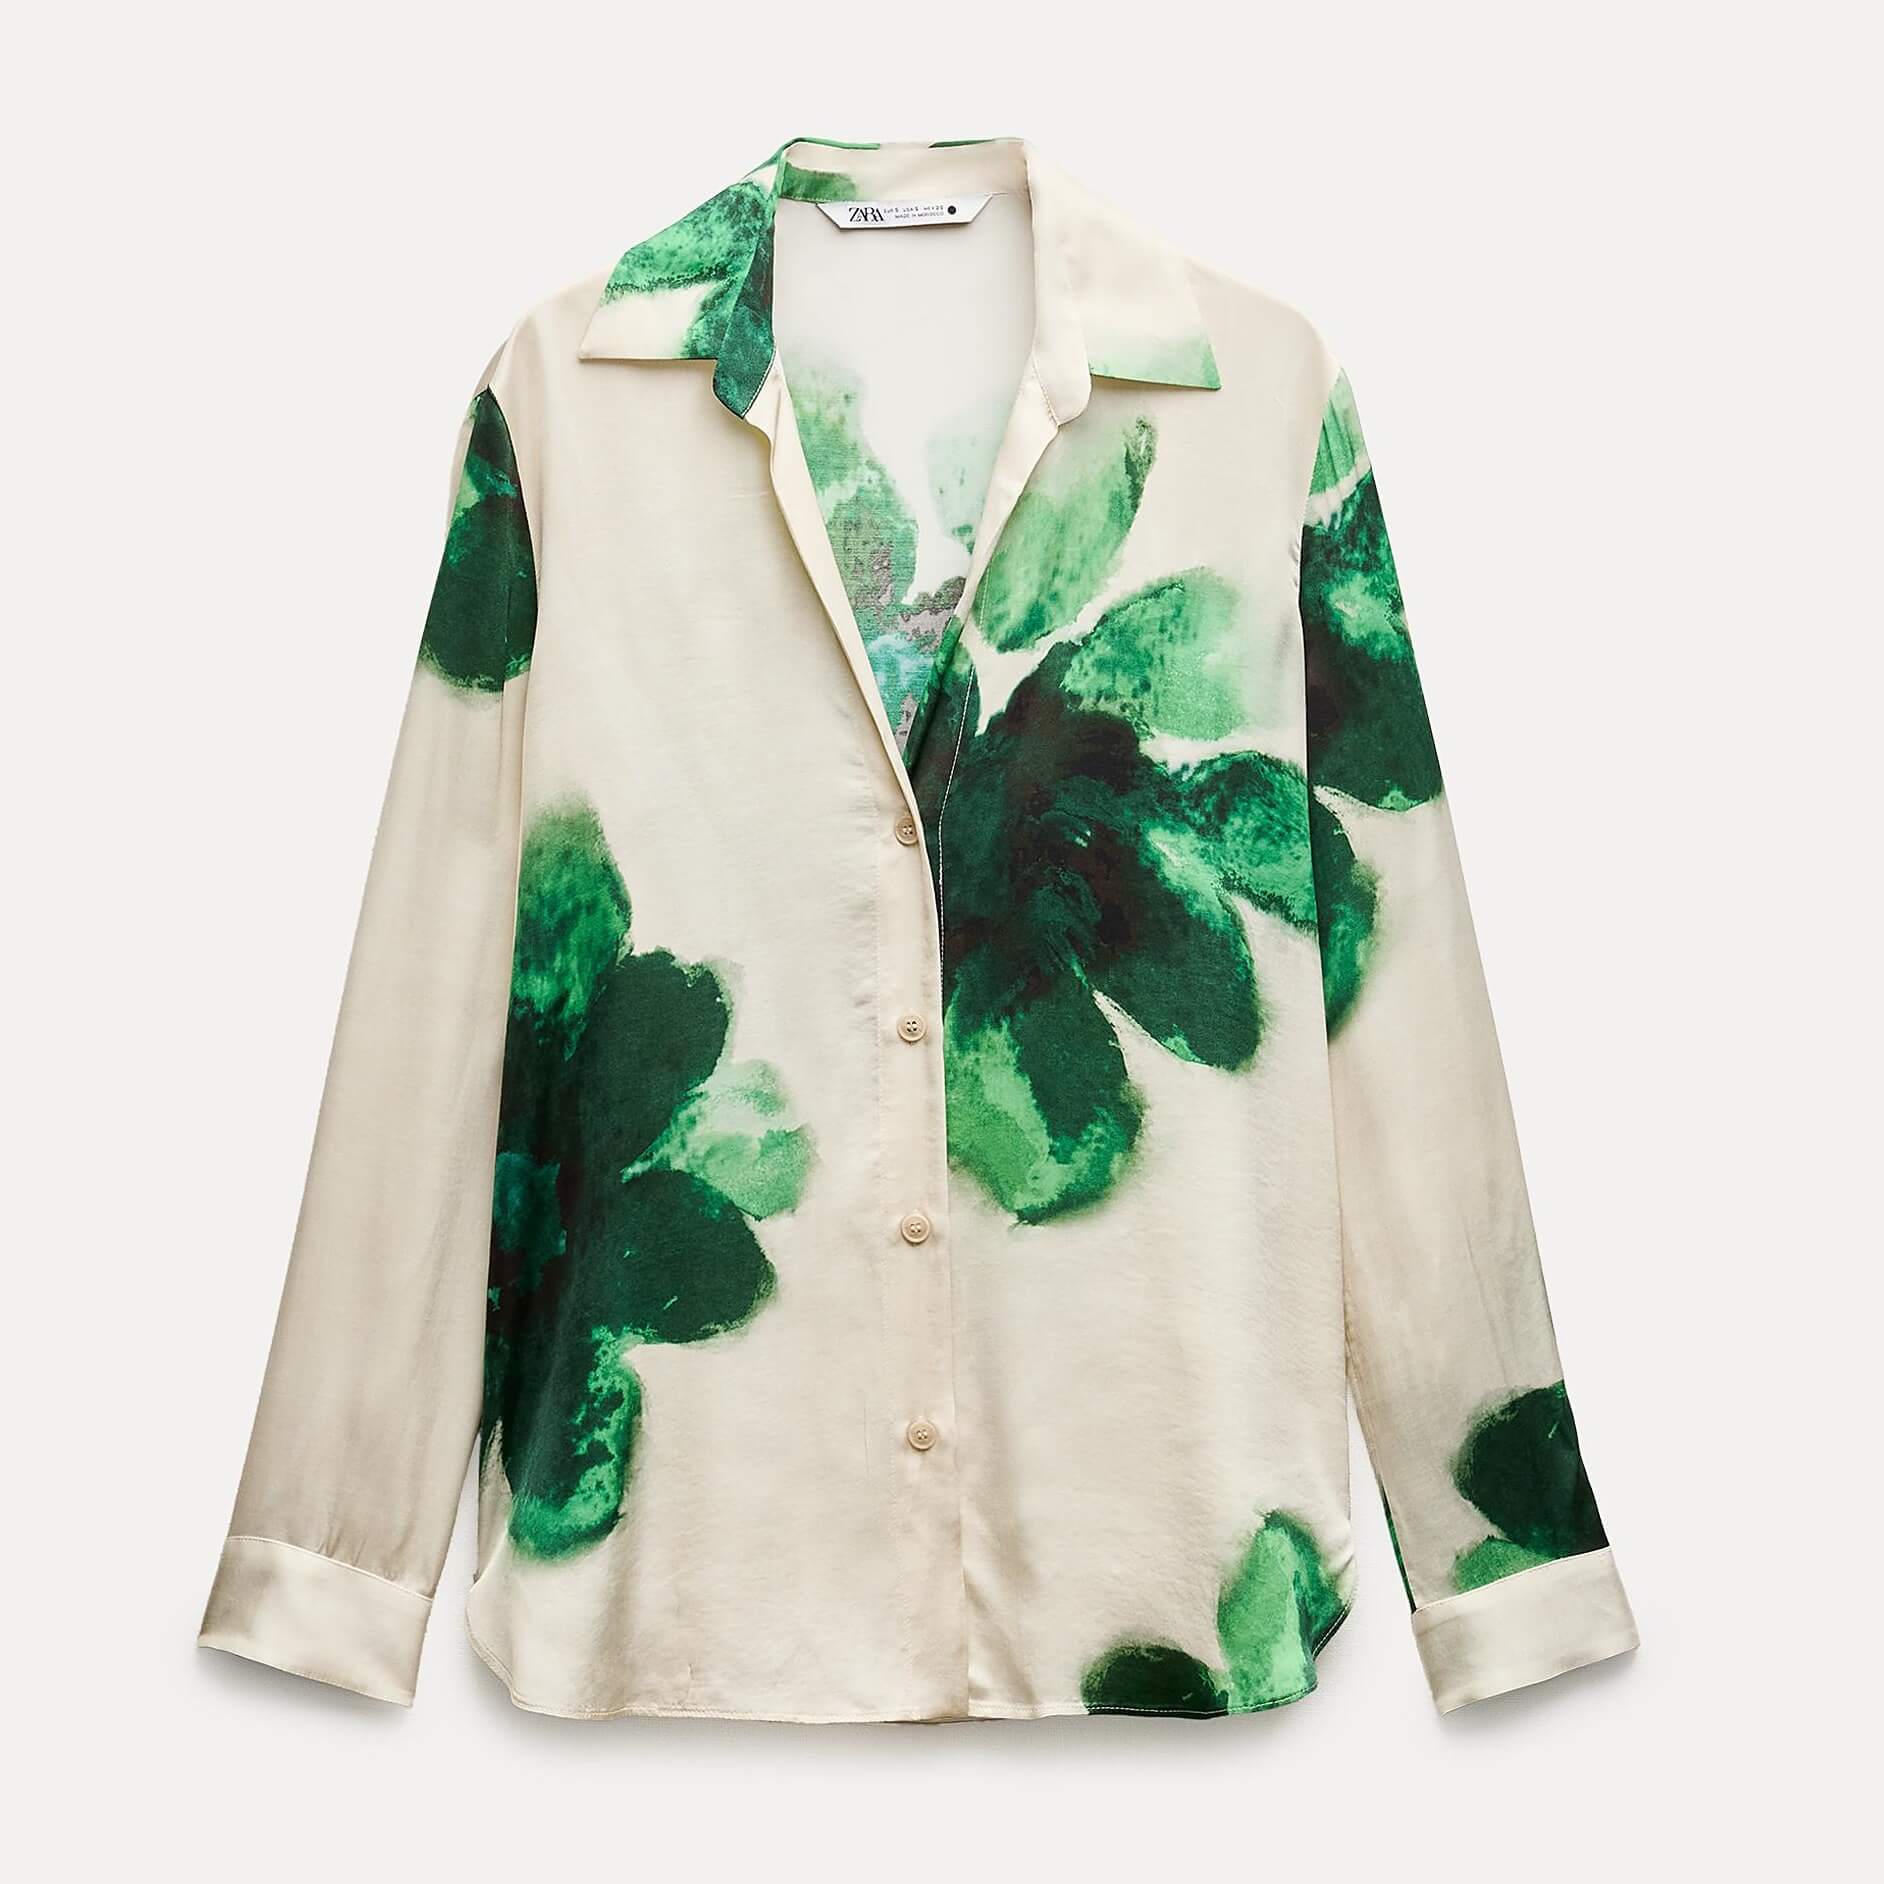 Рубашка Zara ZW Collection Flowing Printed, бежевый/зеленый рубашка zara flowing satin бежевый